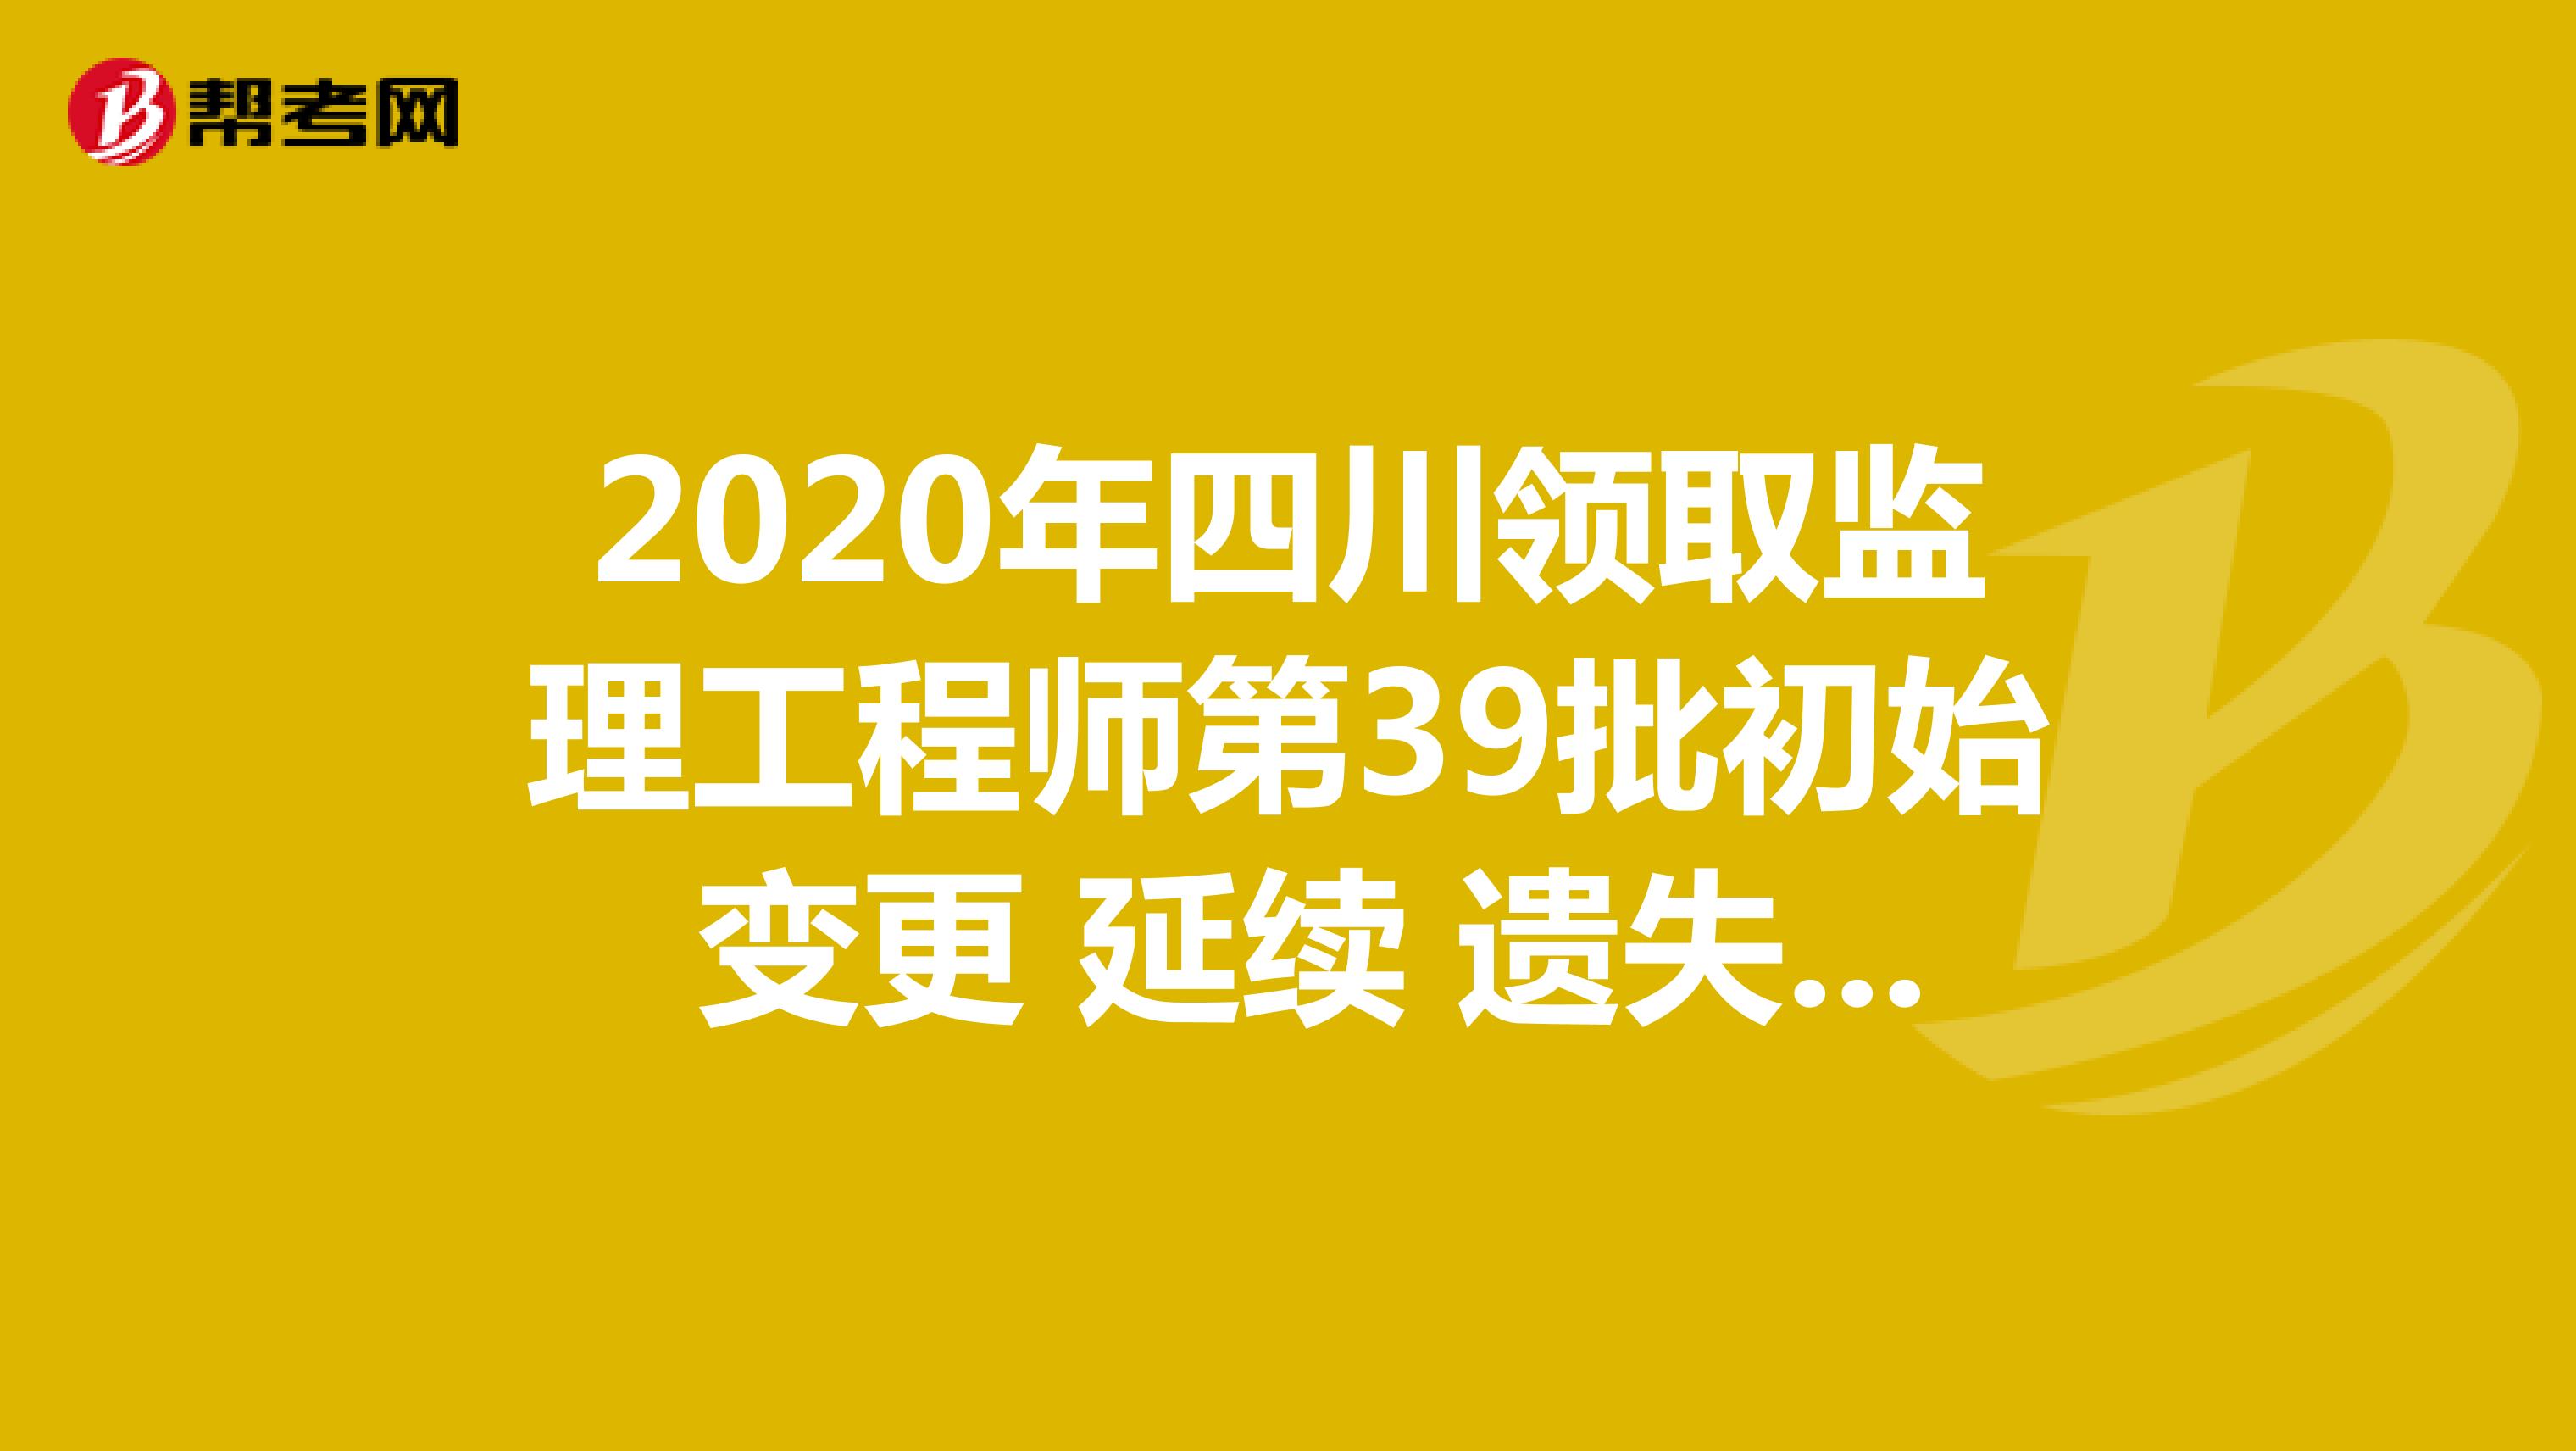 2020年四川领取监理工程师第39批初始 变更 延续 遗失破损补办注册证书的通知